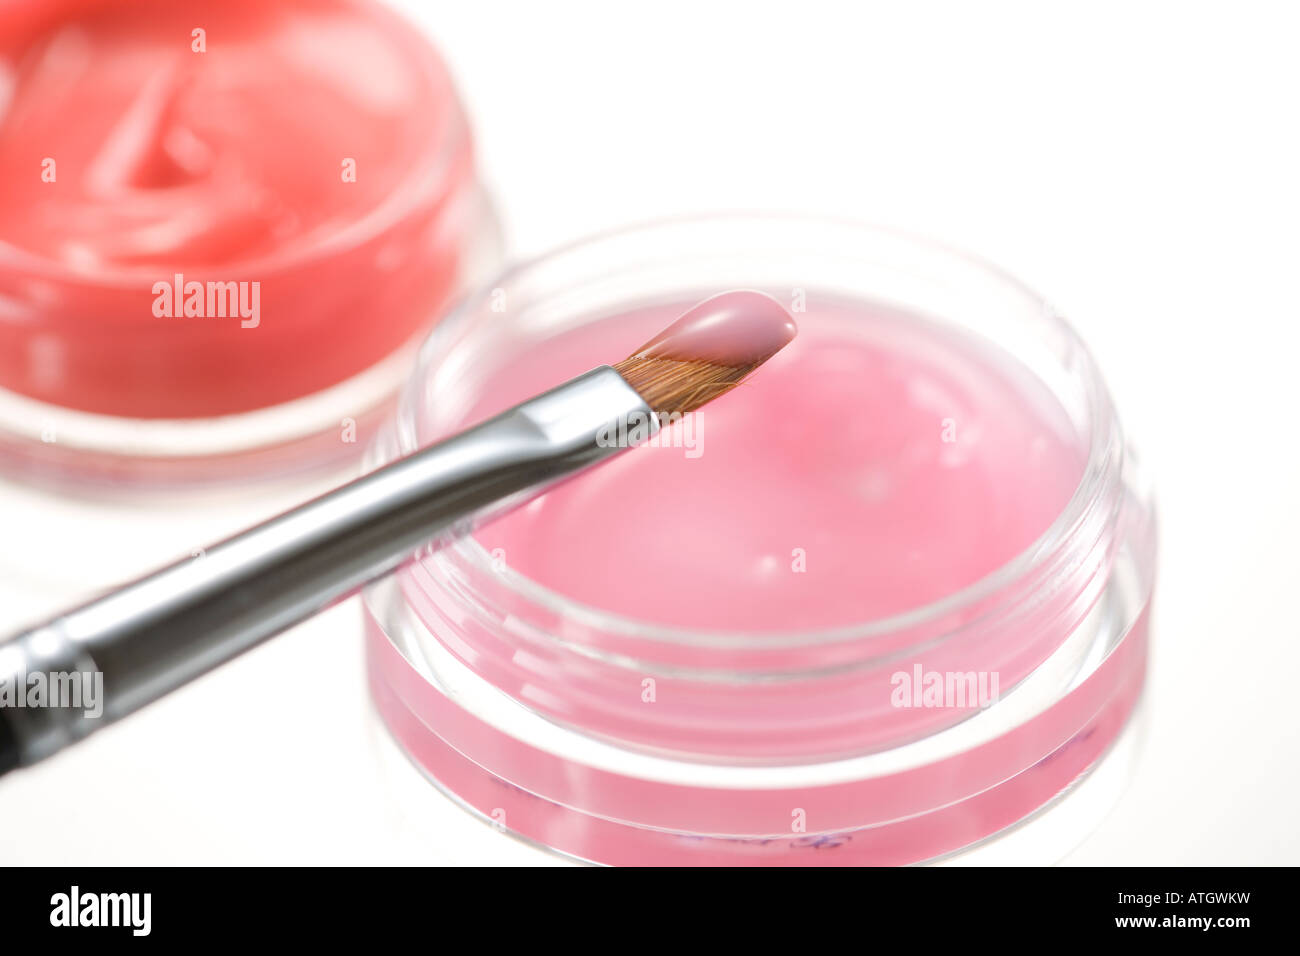 Lip gloss and lip brush Stock Photo